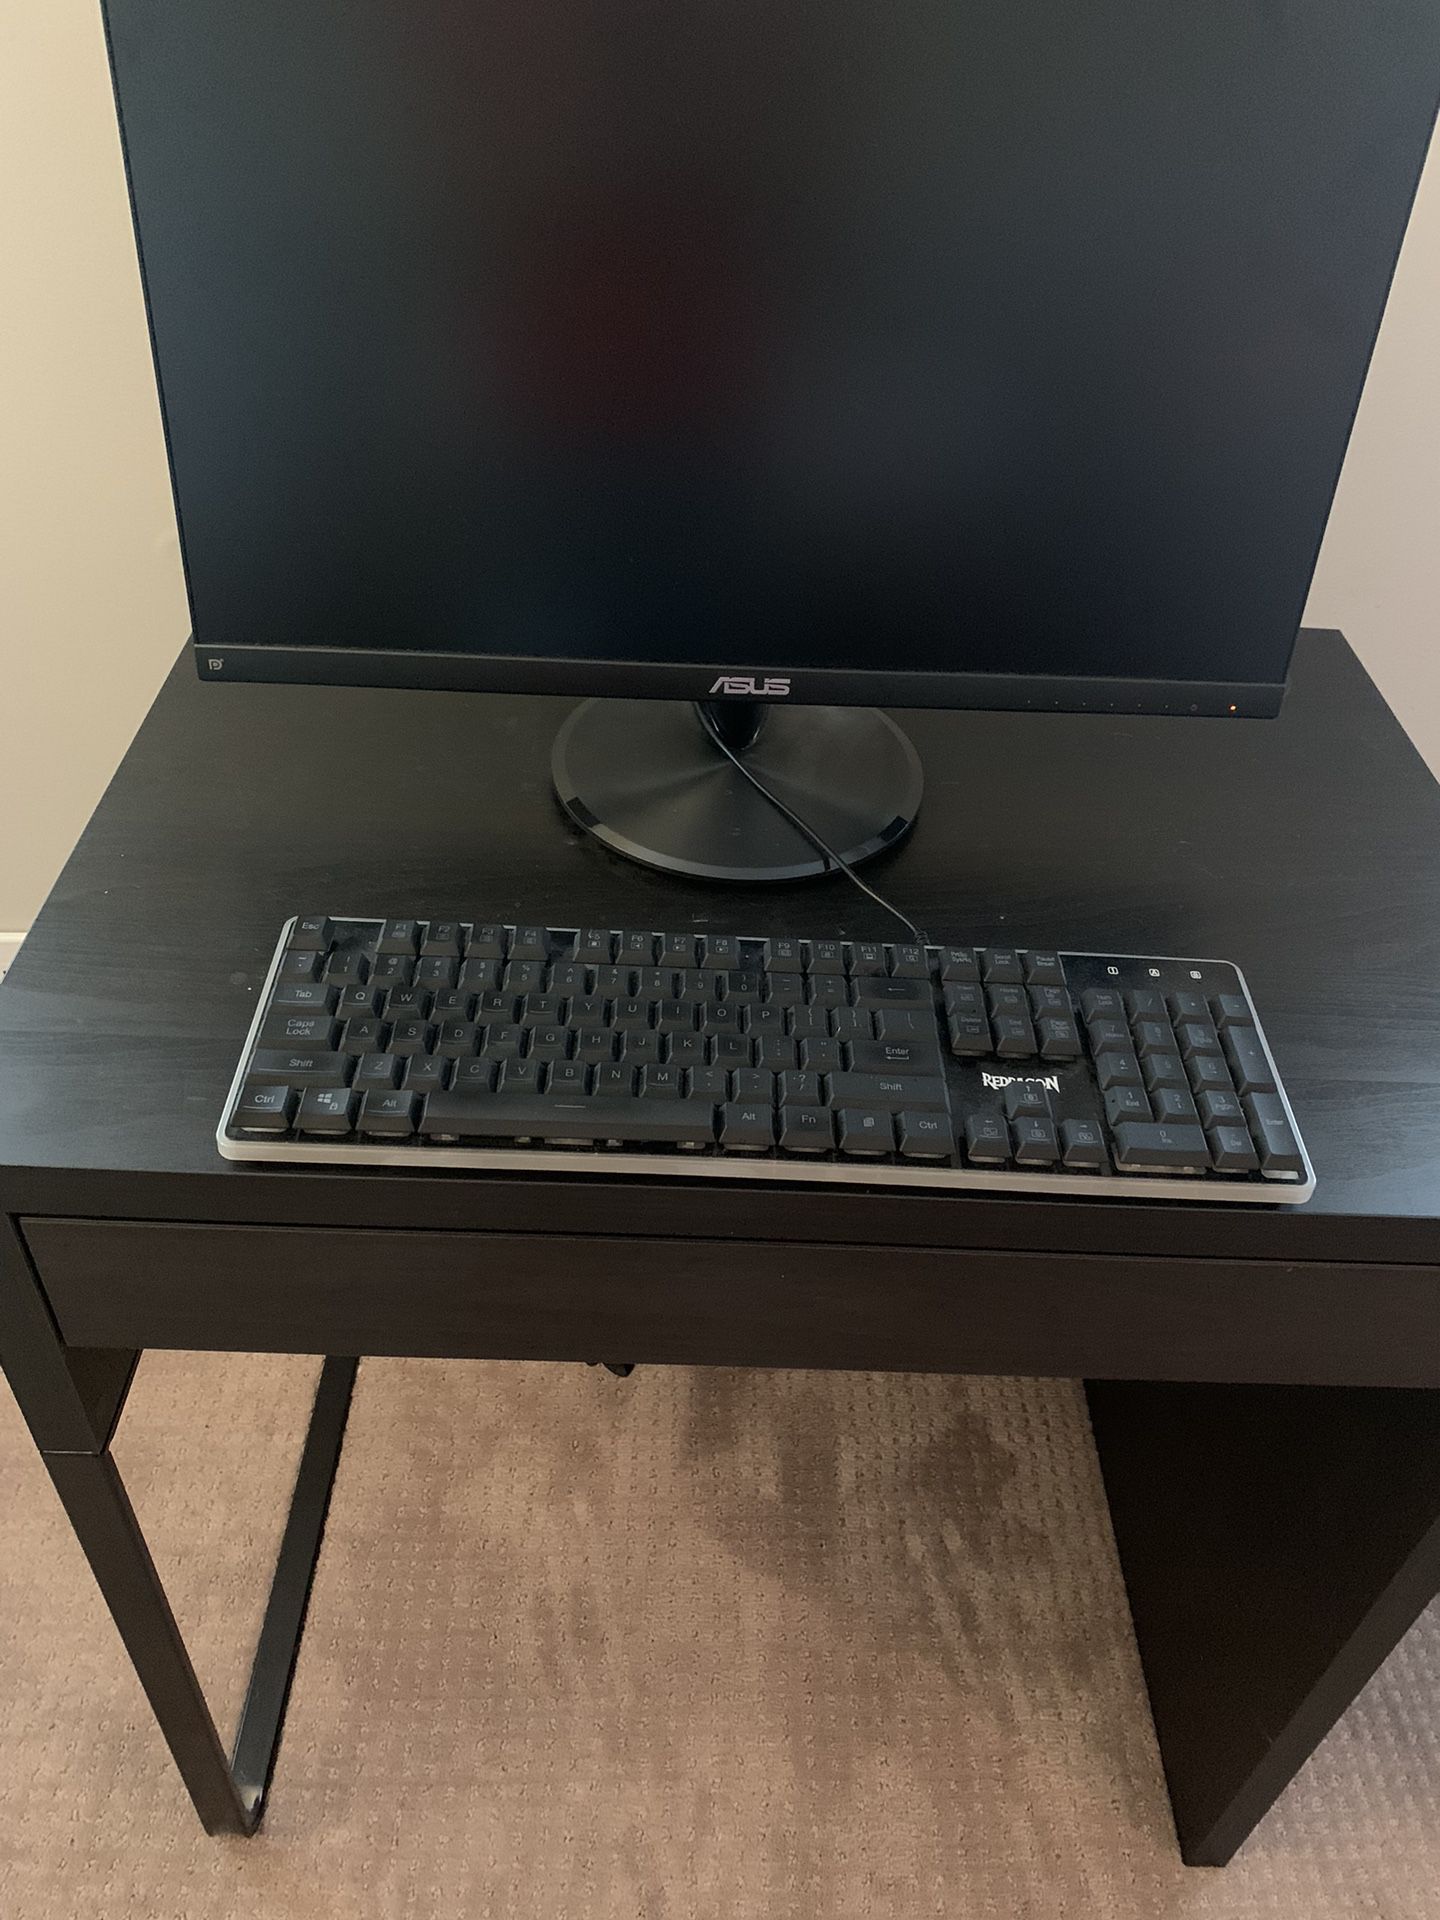 Great Computer Desk